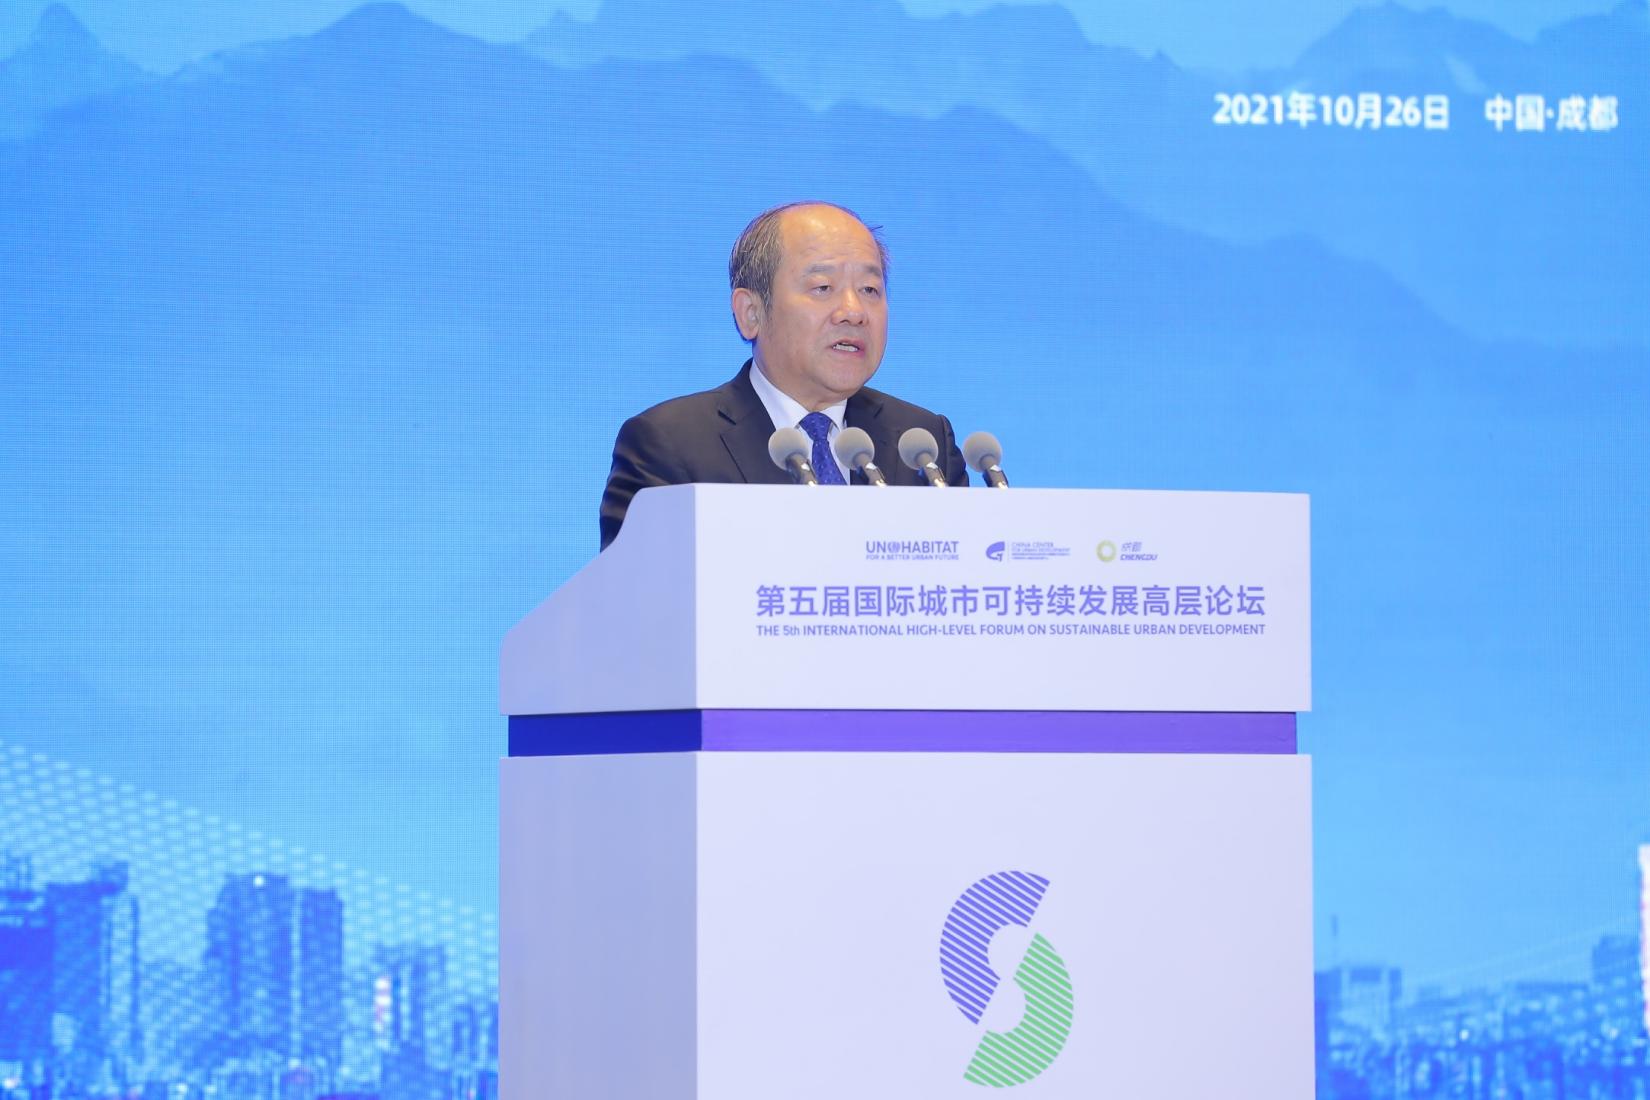  国家发展改革委副主任、国家统计局局长宁吉喆致辞